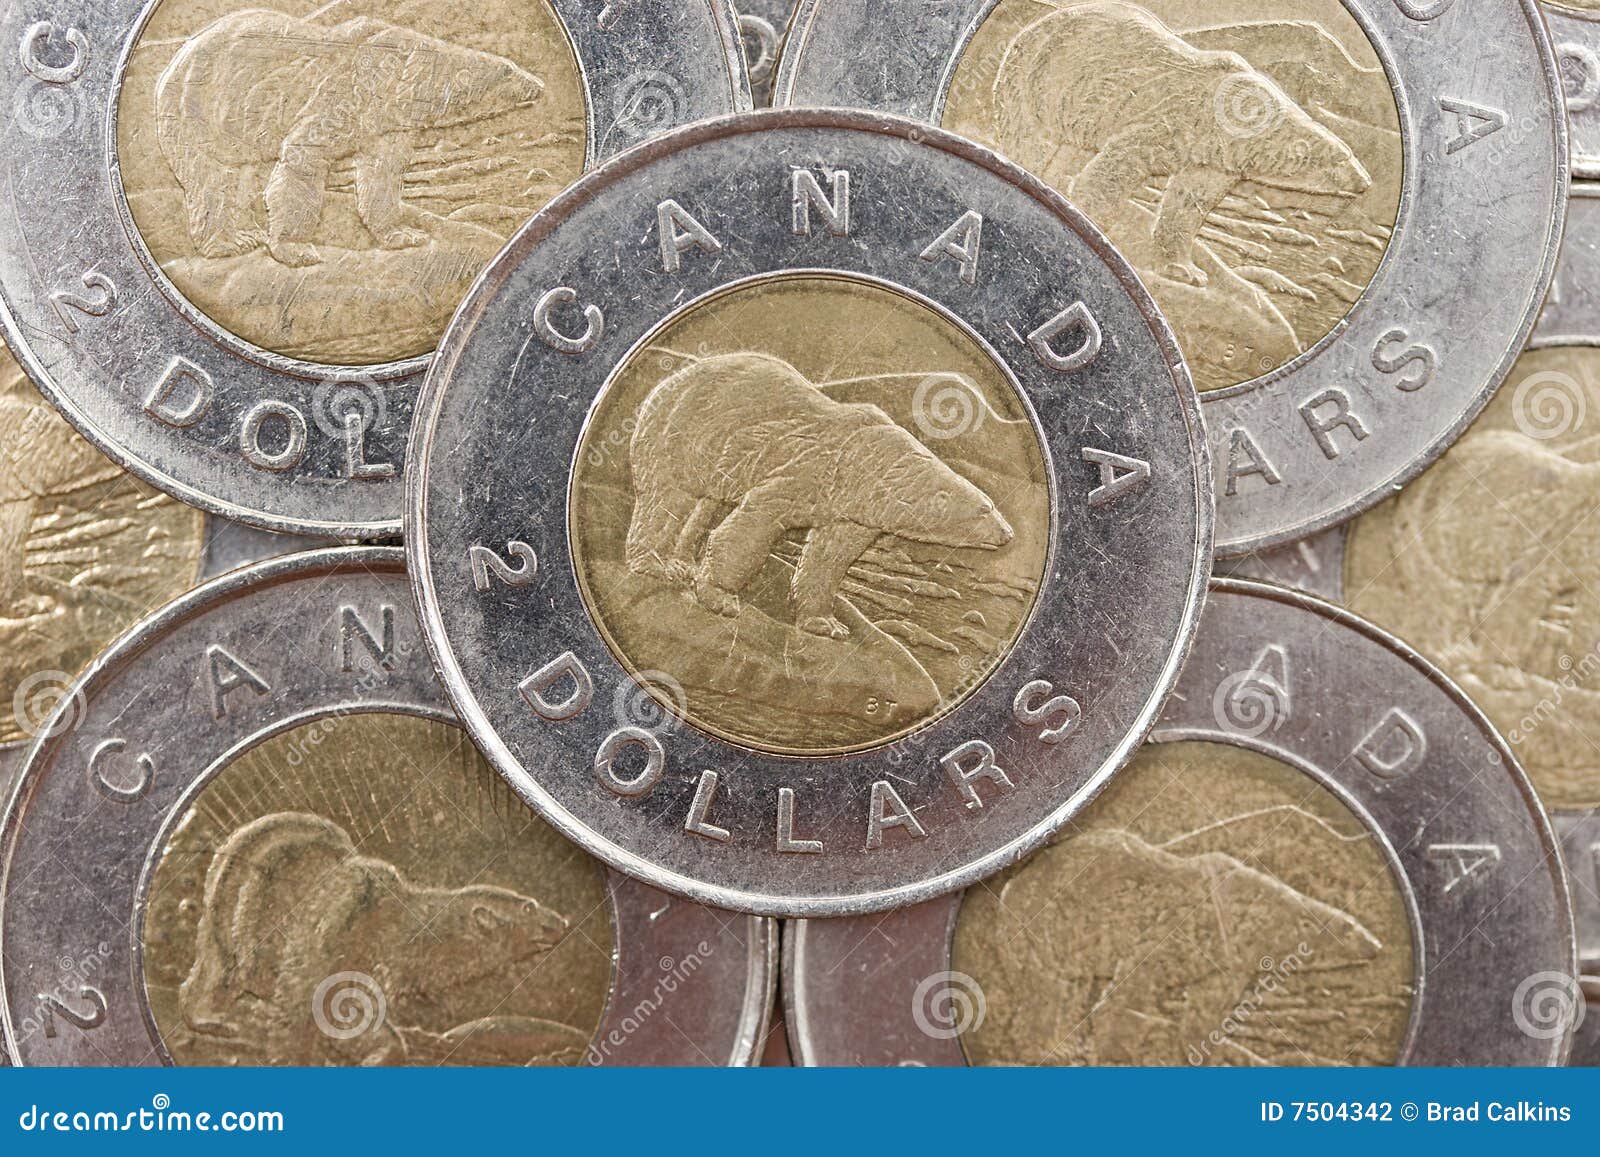 加拿大硬币_各国钱币图片 - 随意云